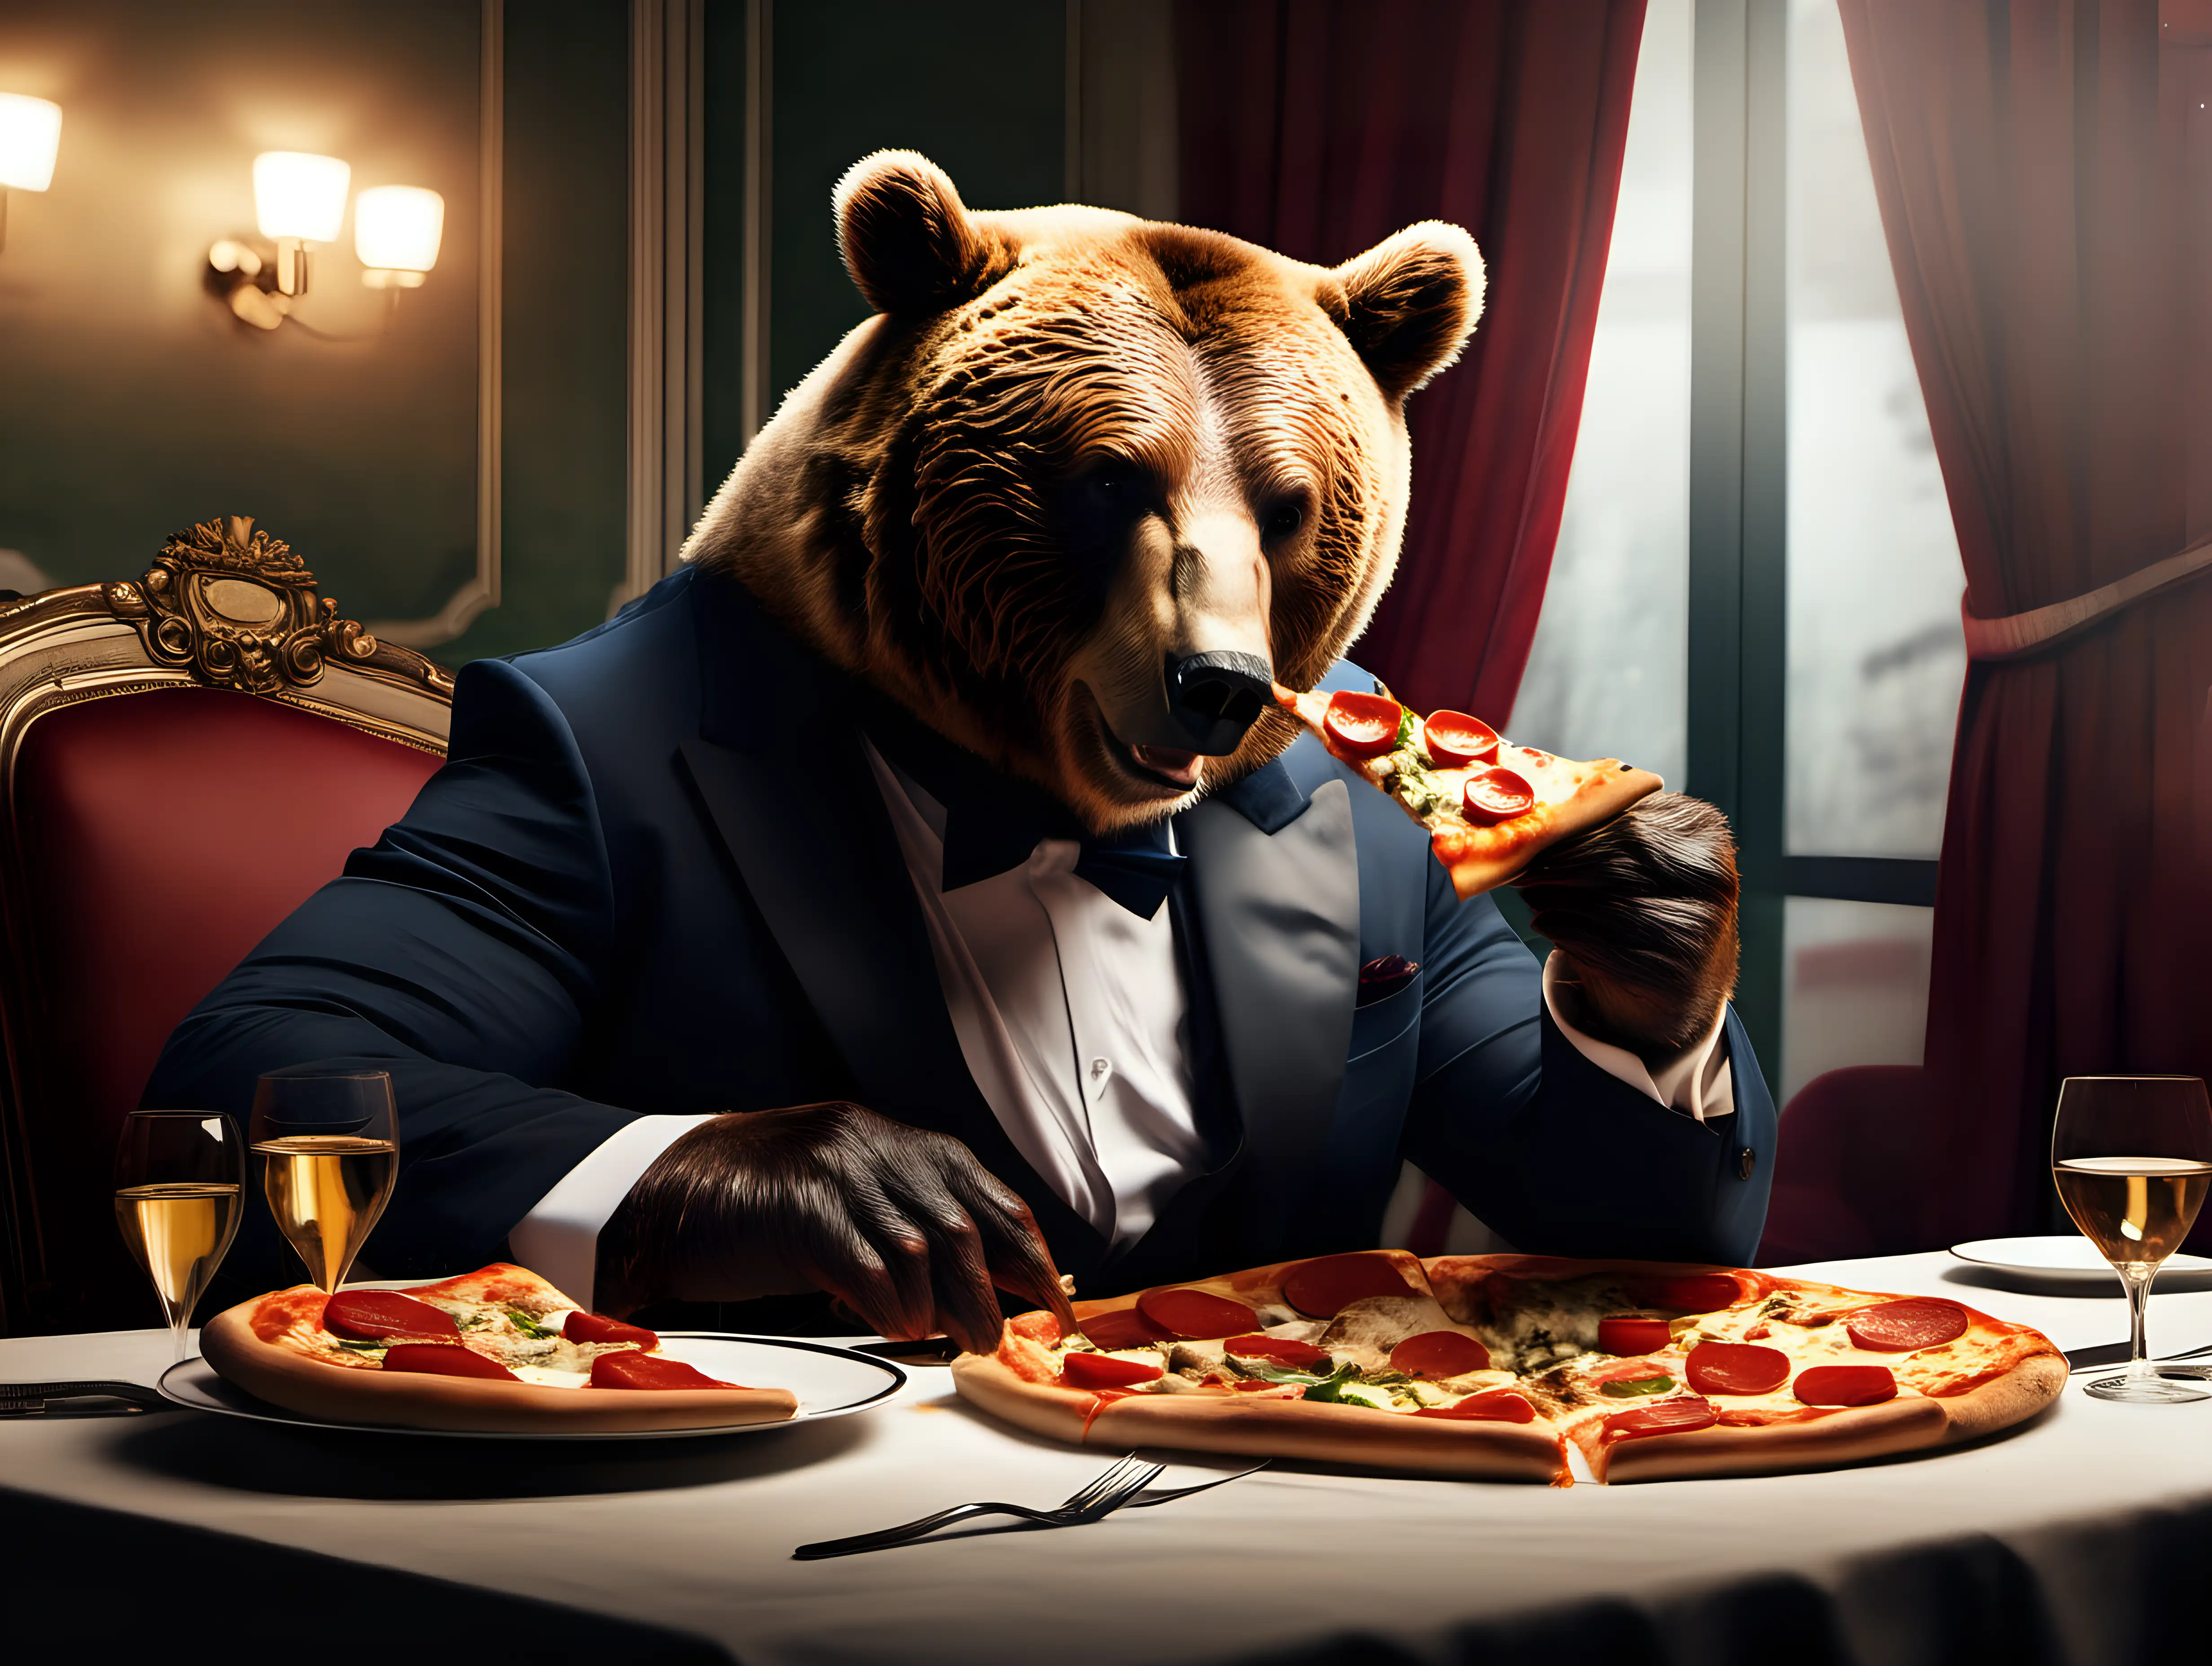  bear eating a pizza in a high class restaurant